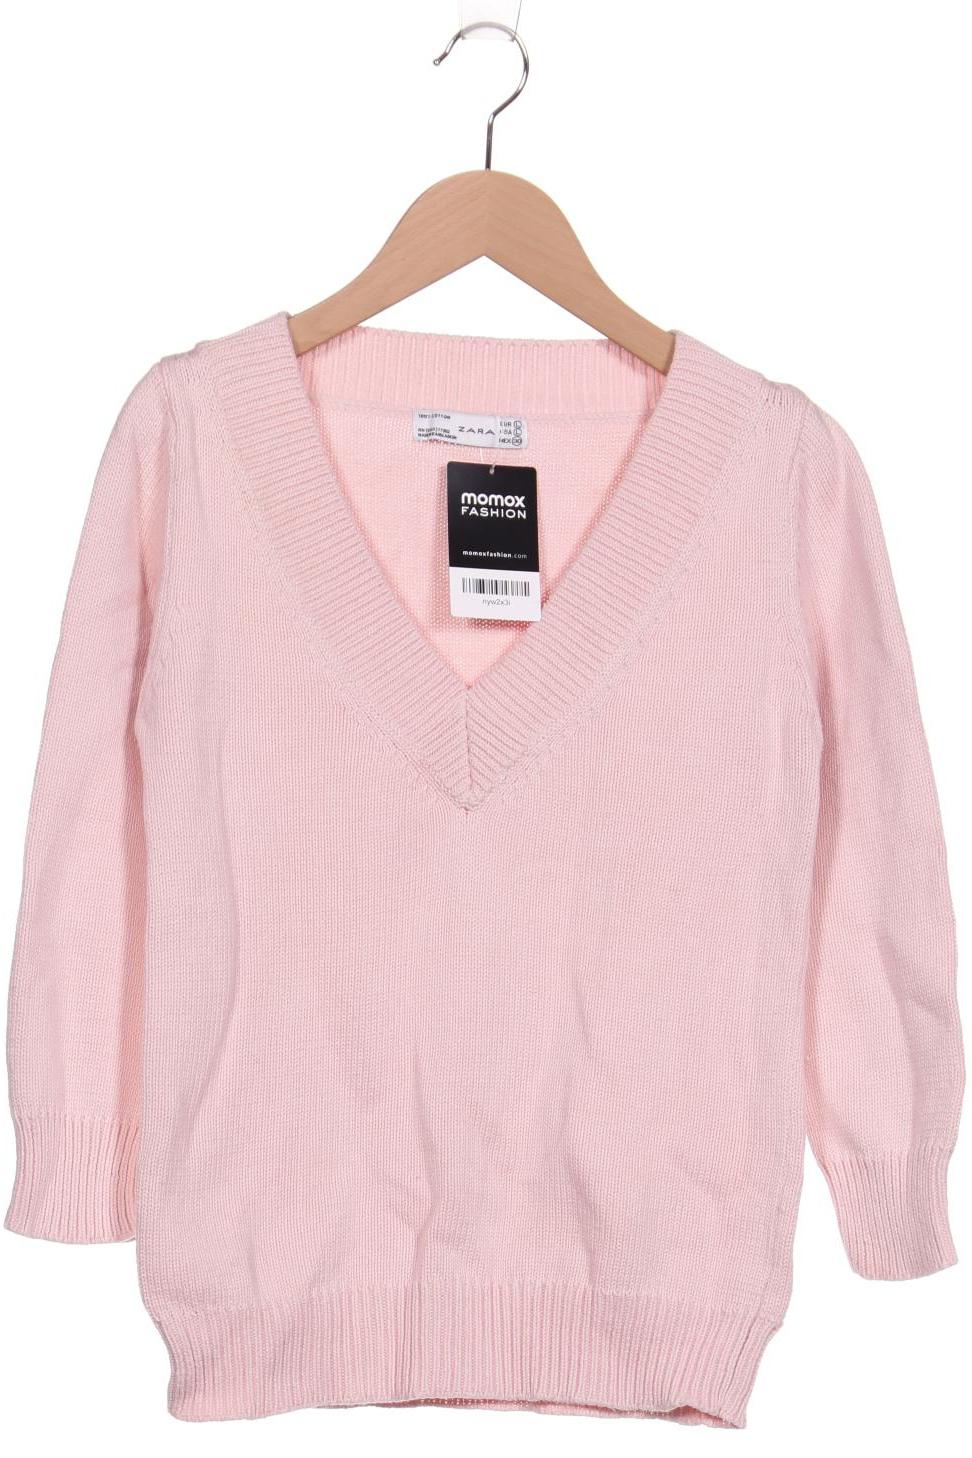 Zara Damen Pullover, pink, Gr. 42 von ZARA